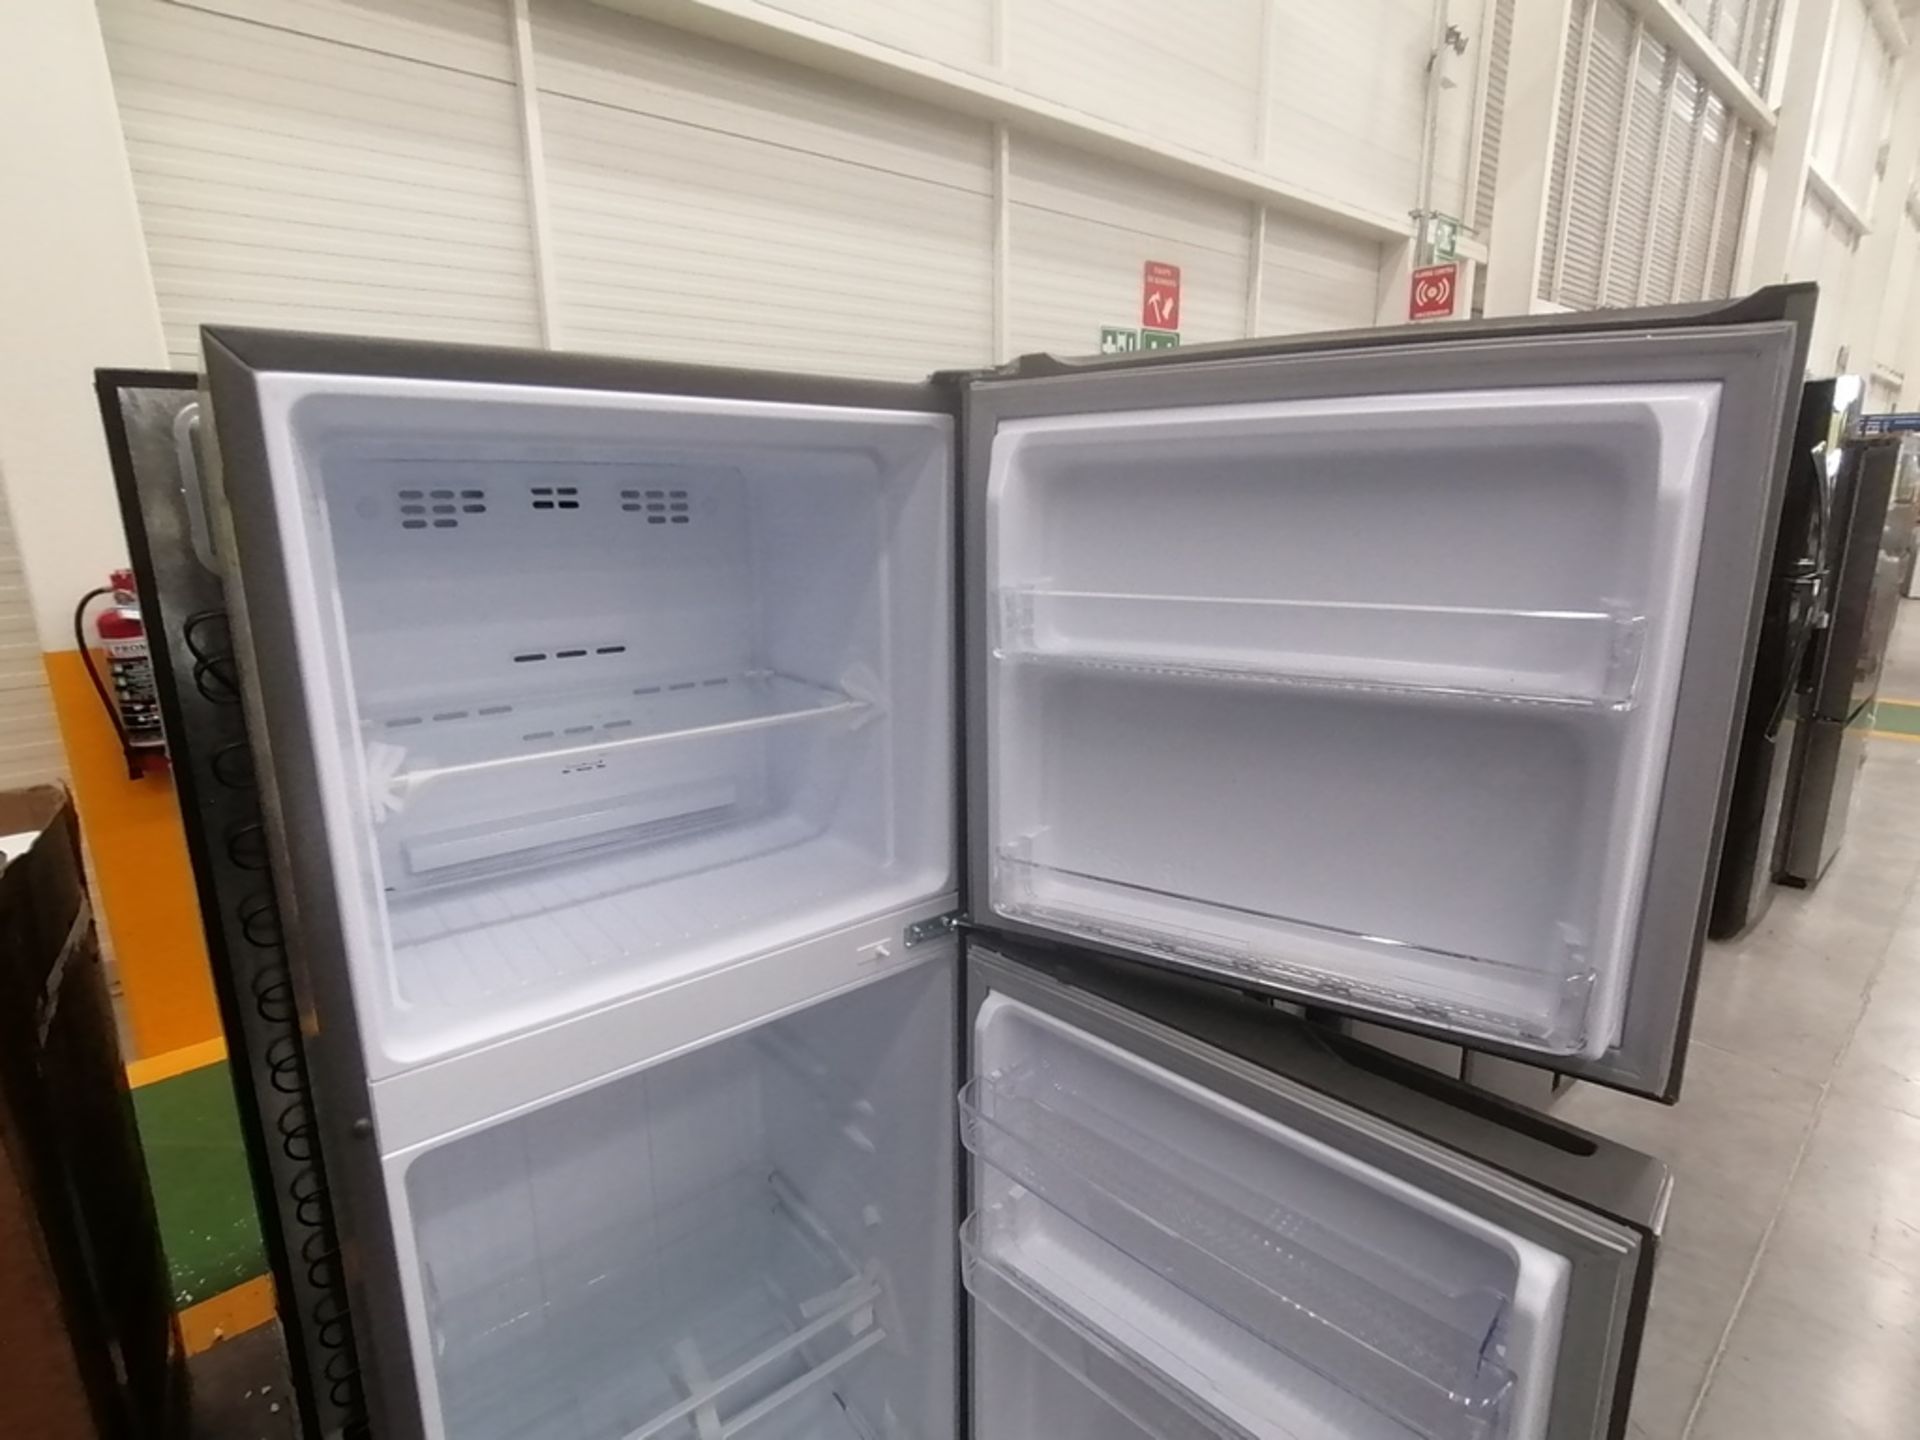 Lote de 2 refrigeradores incluye: 1 Refrigerador con dispensador de agua, Marca Whirlpool, Modelo W - Image 11 of 15